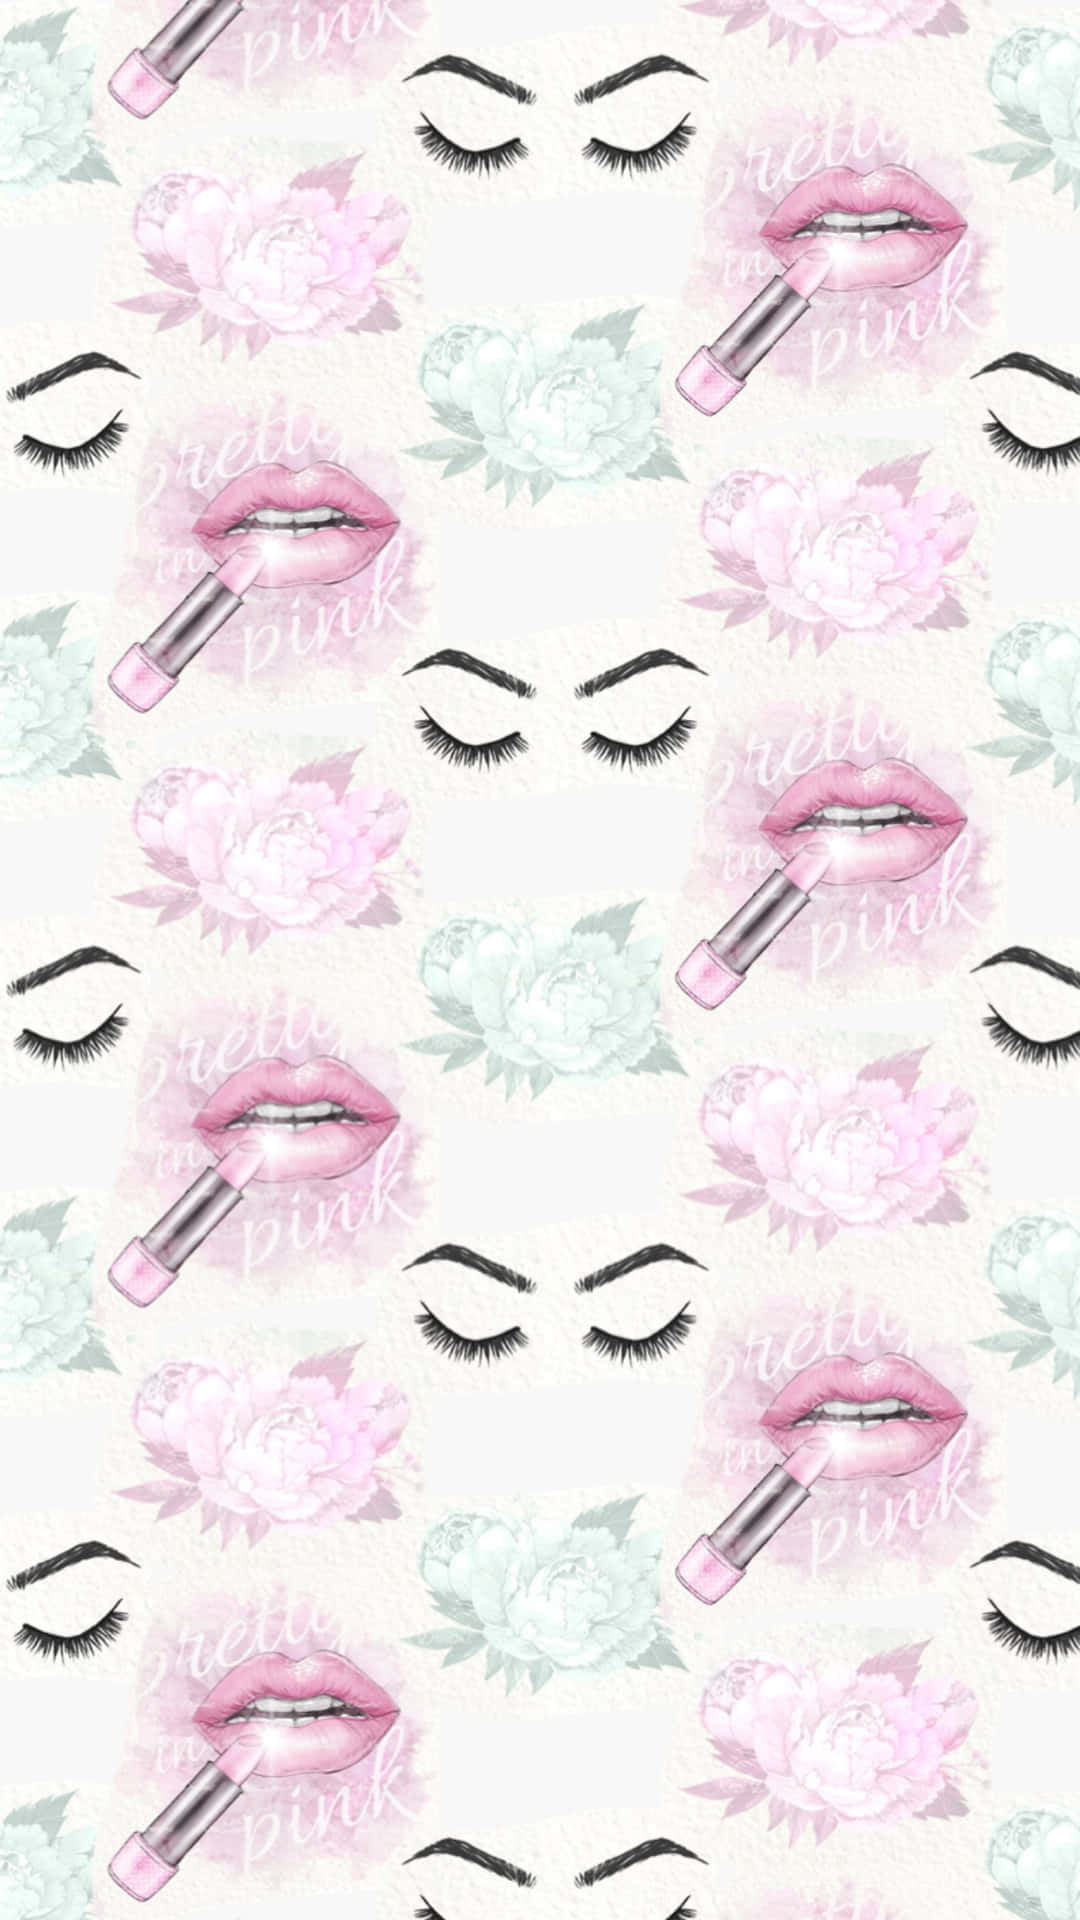 Estéticade Maquillaje En Tonos Rosas Glamoroso. Fondo de pantalla